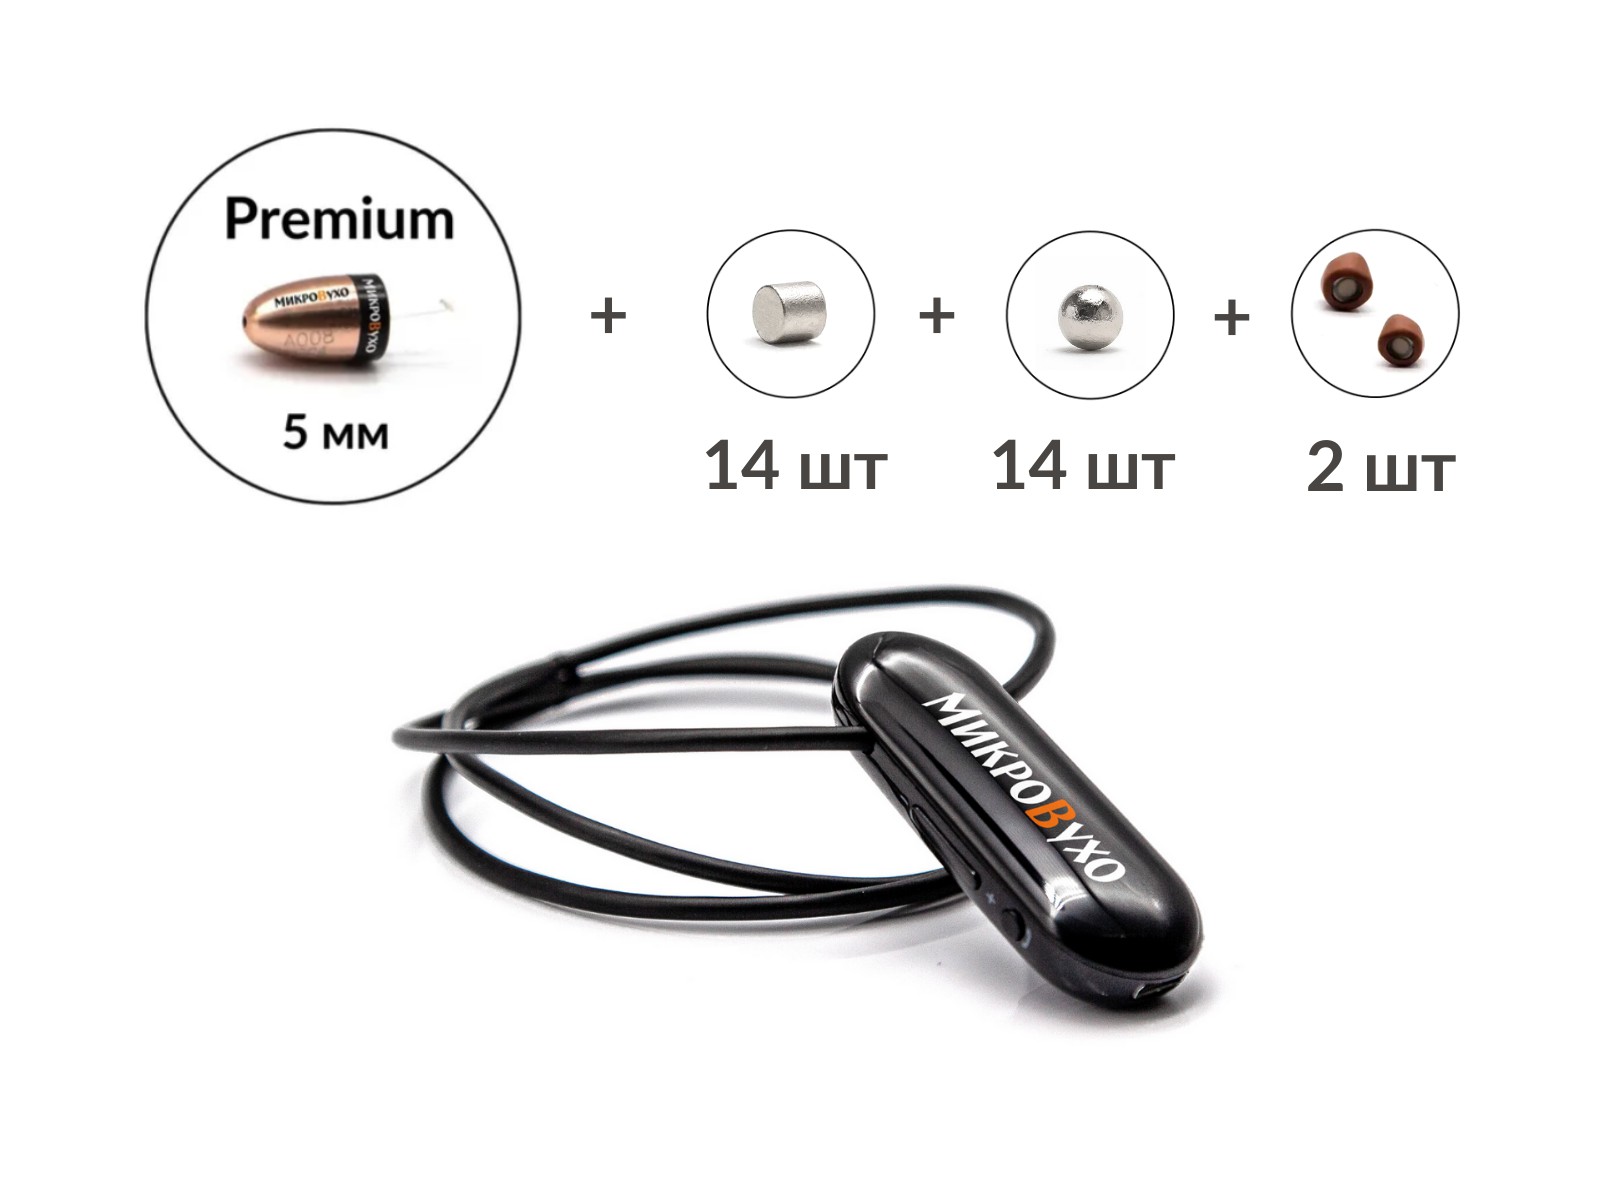 Универсальная гарнитура Bluetooth Pro с капсулой Premium и магнитами 2 мм - изображение 4